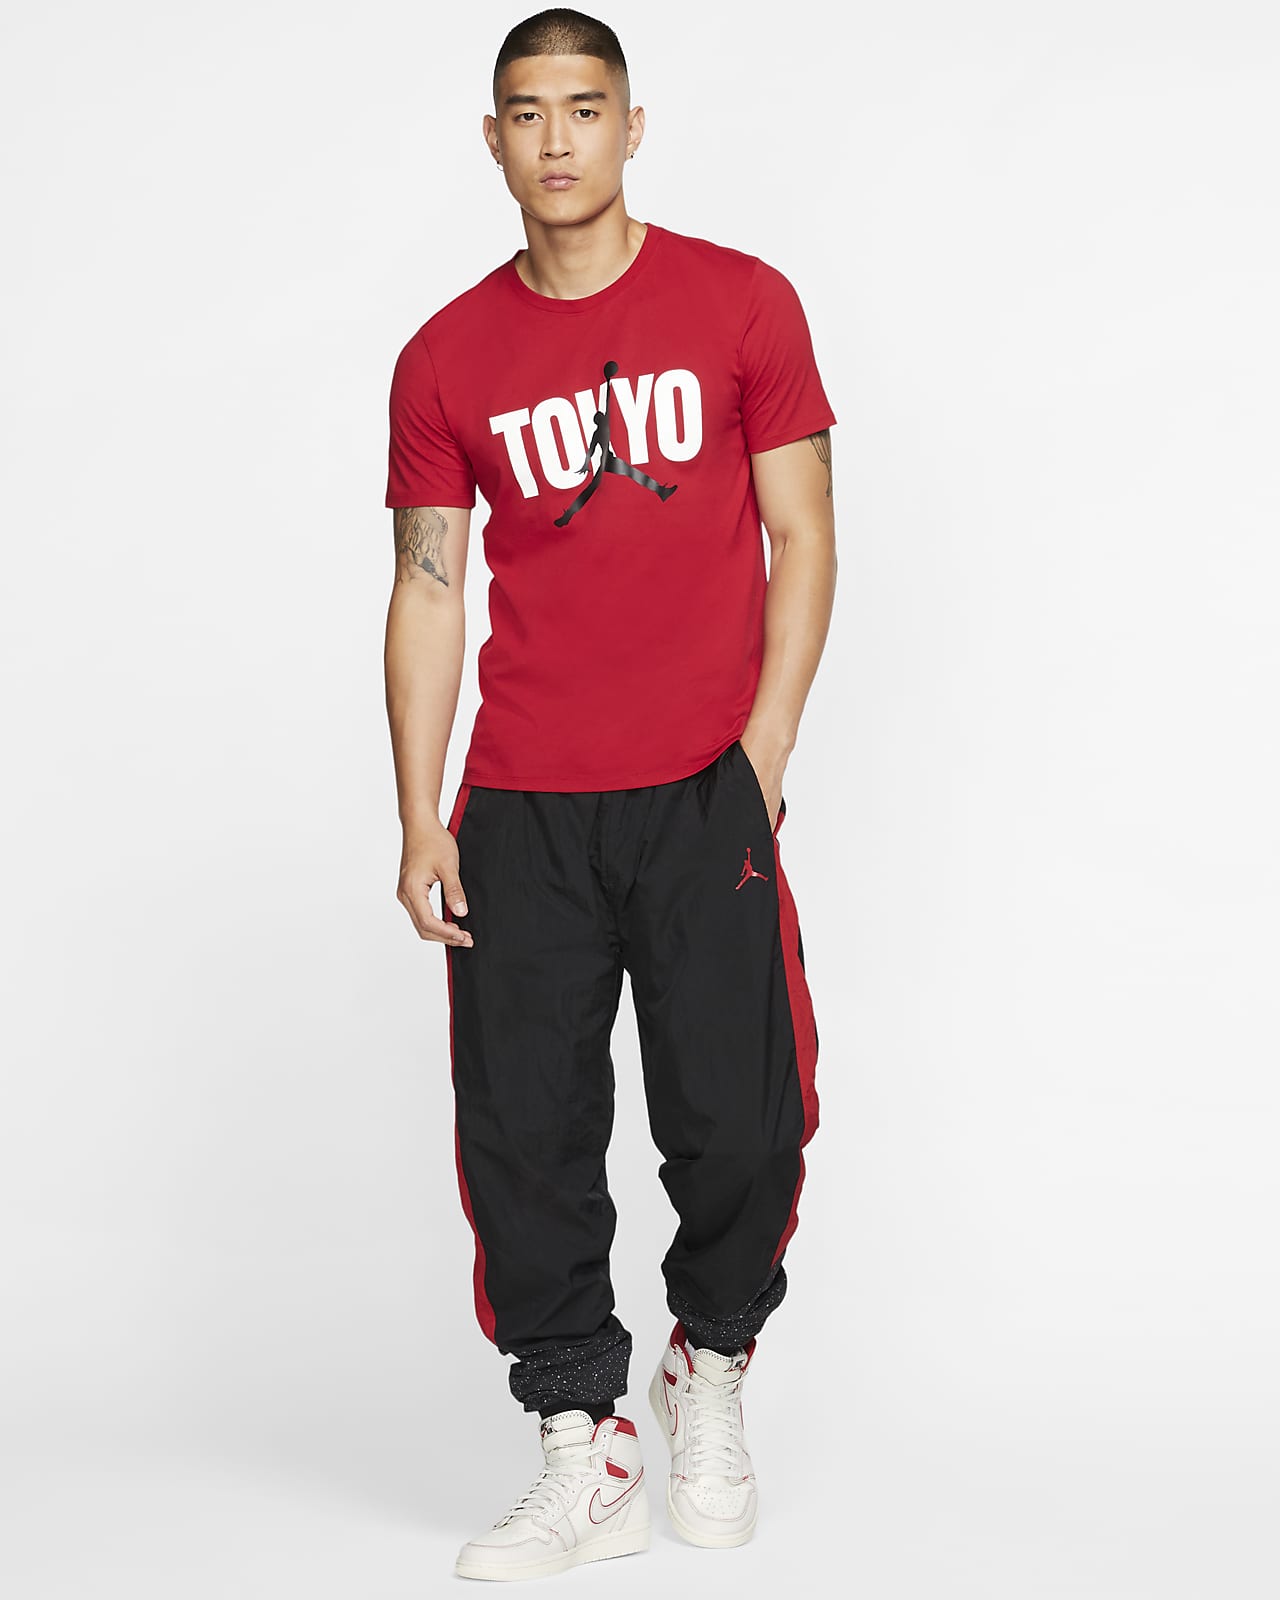 Jordan Back In Tokyo Men's T-Shirt. Nike JP